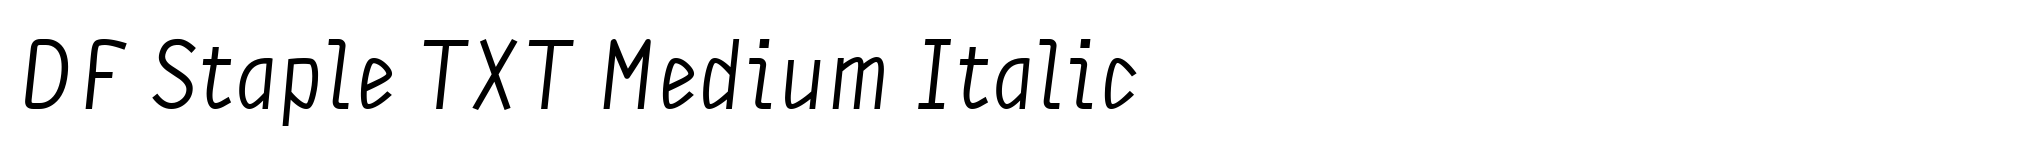 DF Staple TXT Medium Italic image